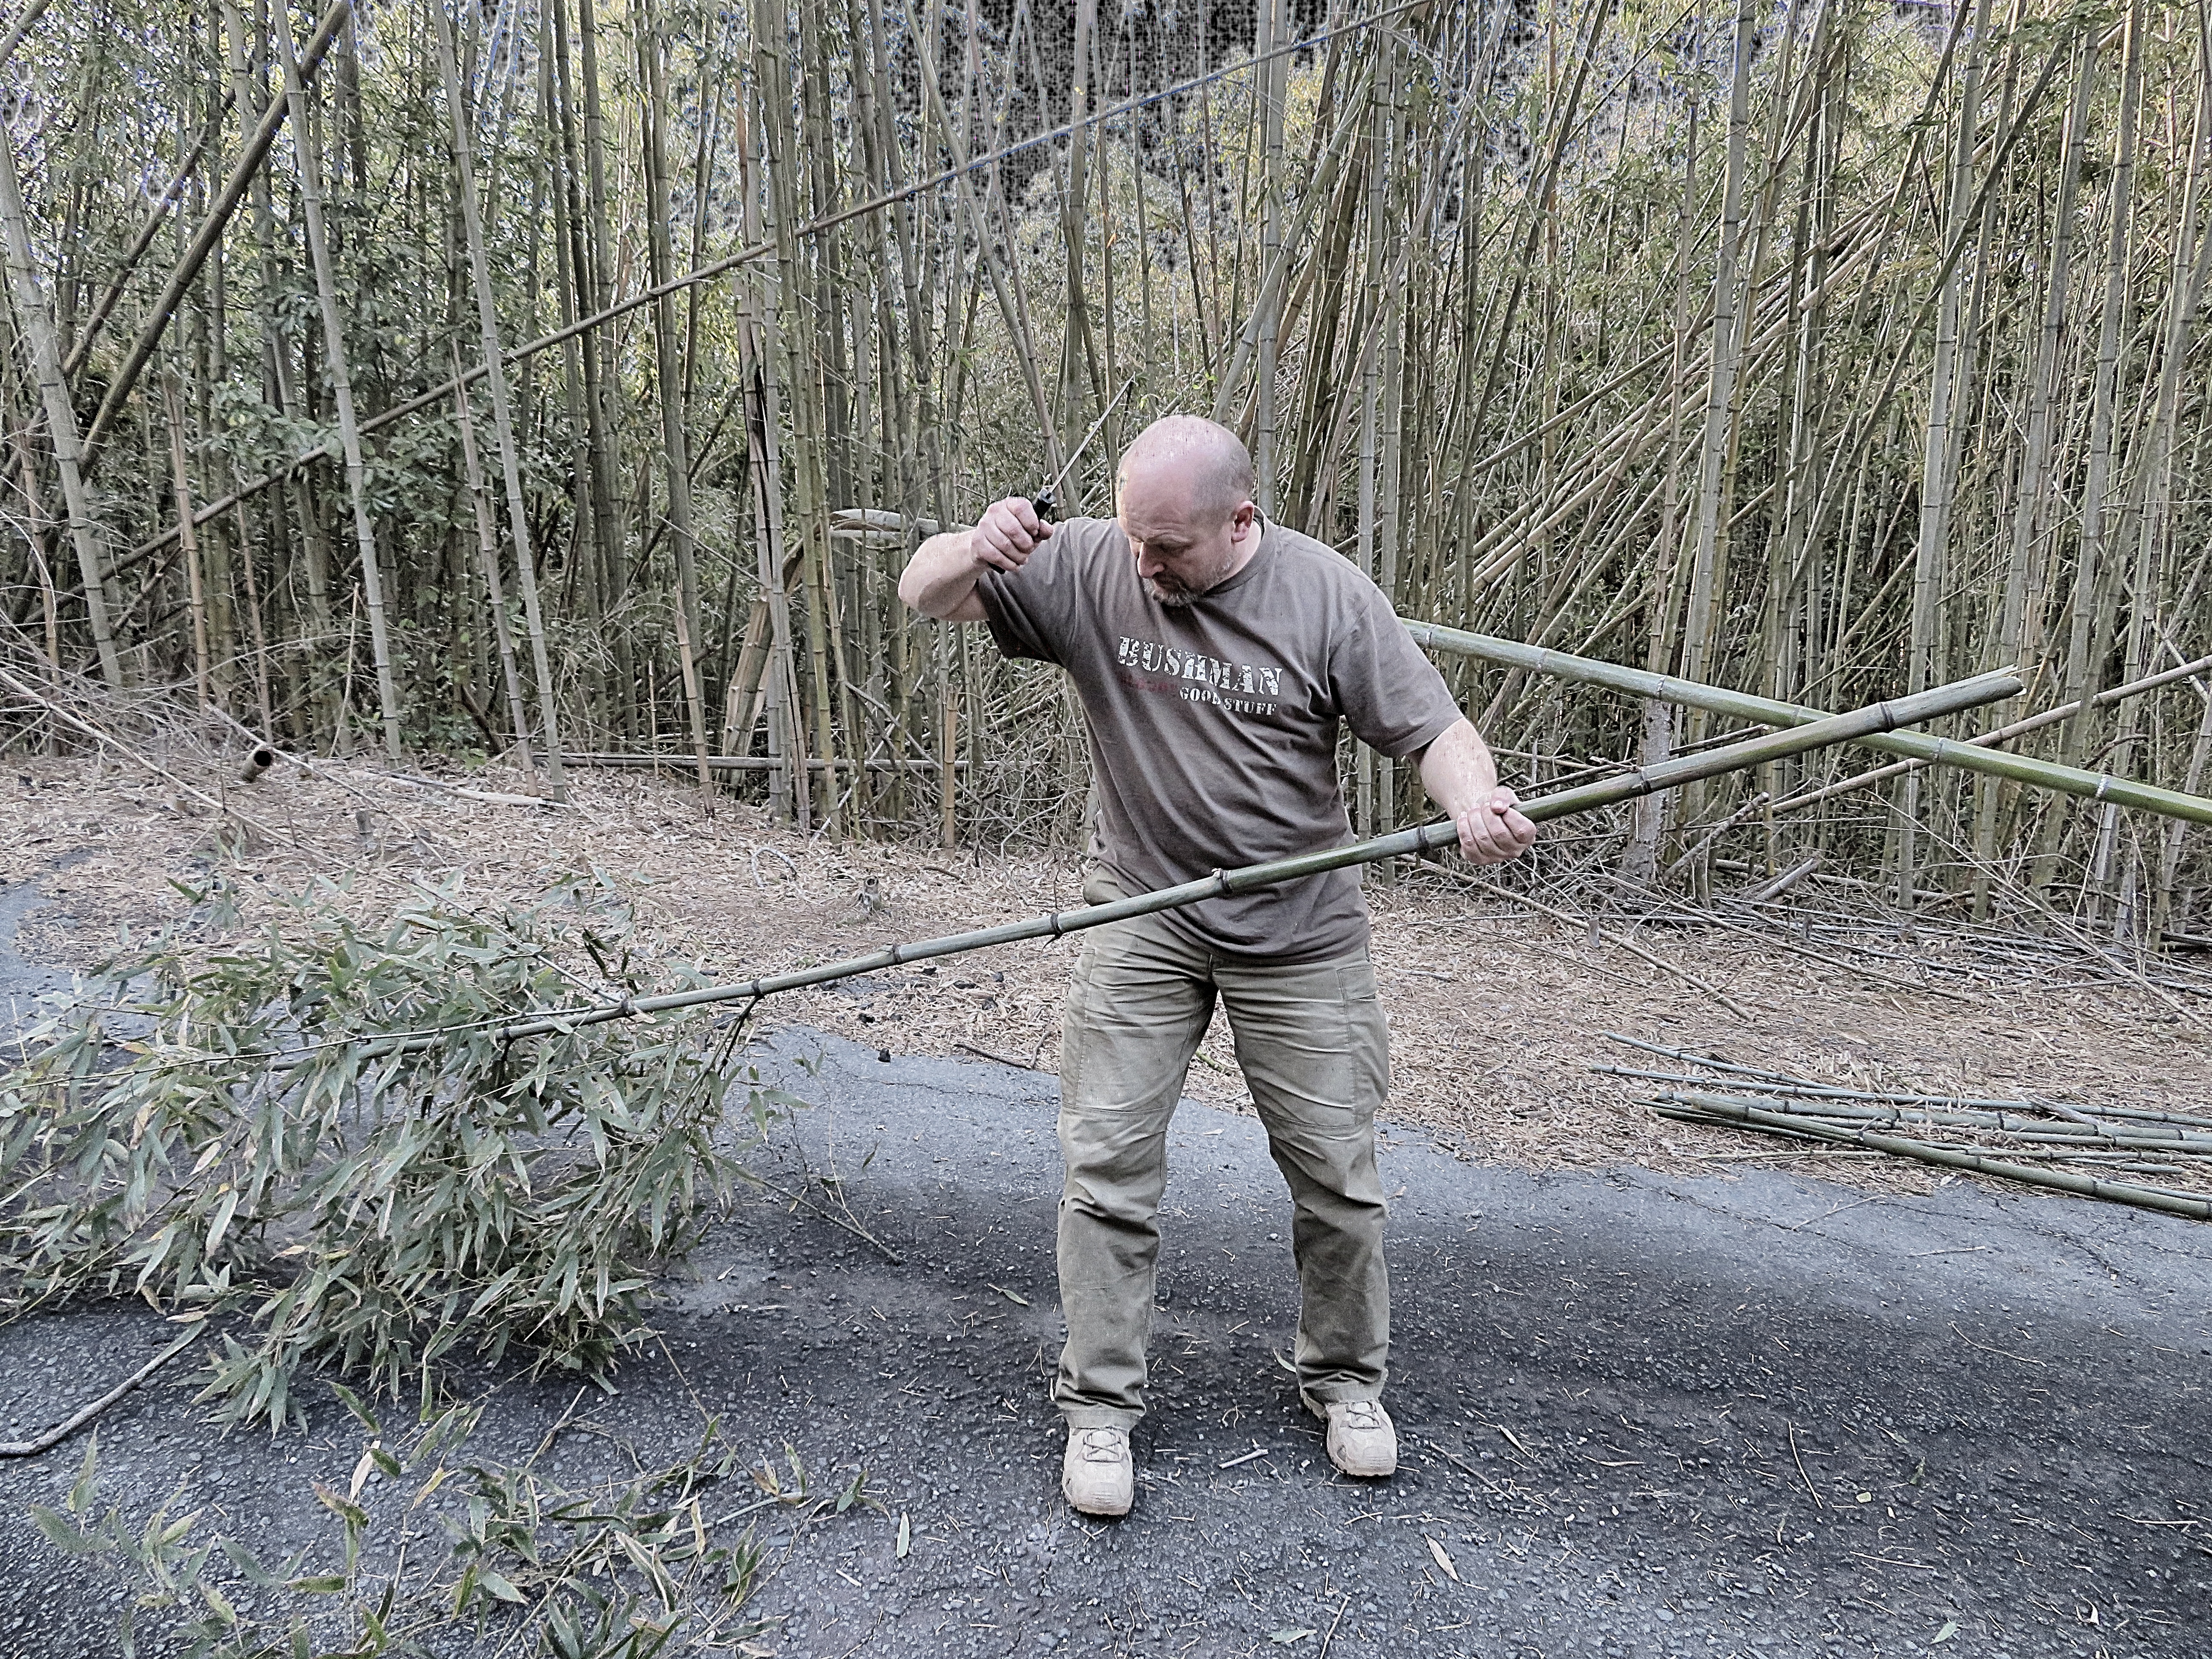 Cold steel Recon Tanto v akci – odsekávání zelených bambusů Madake.